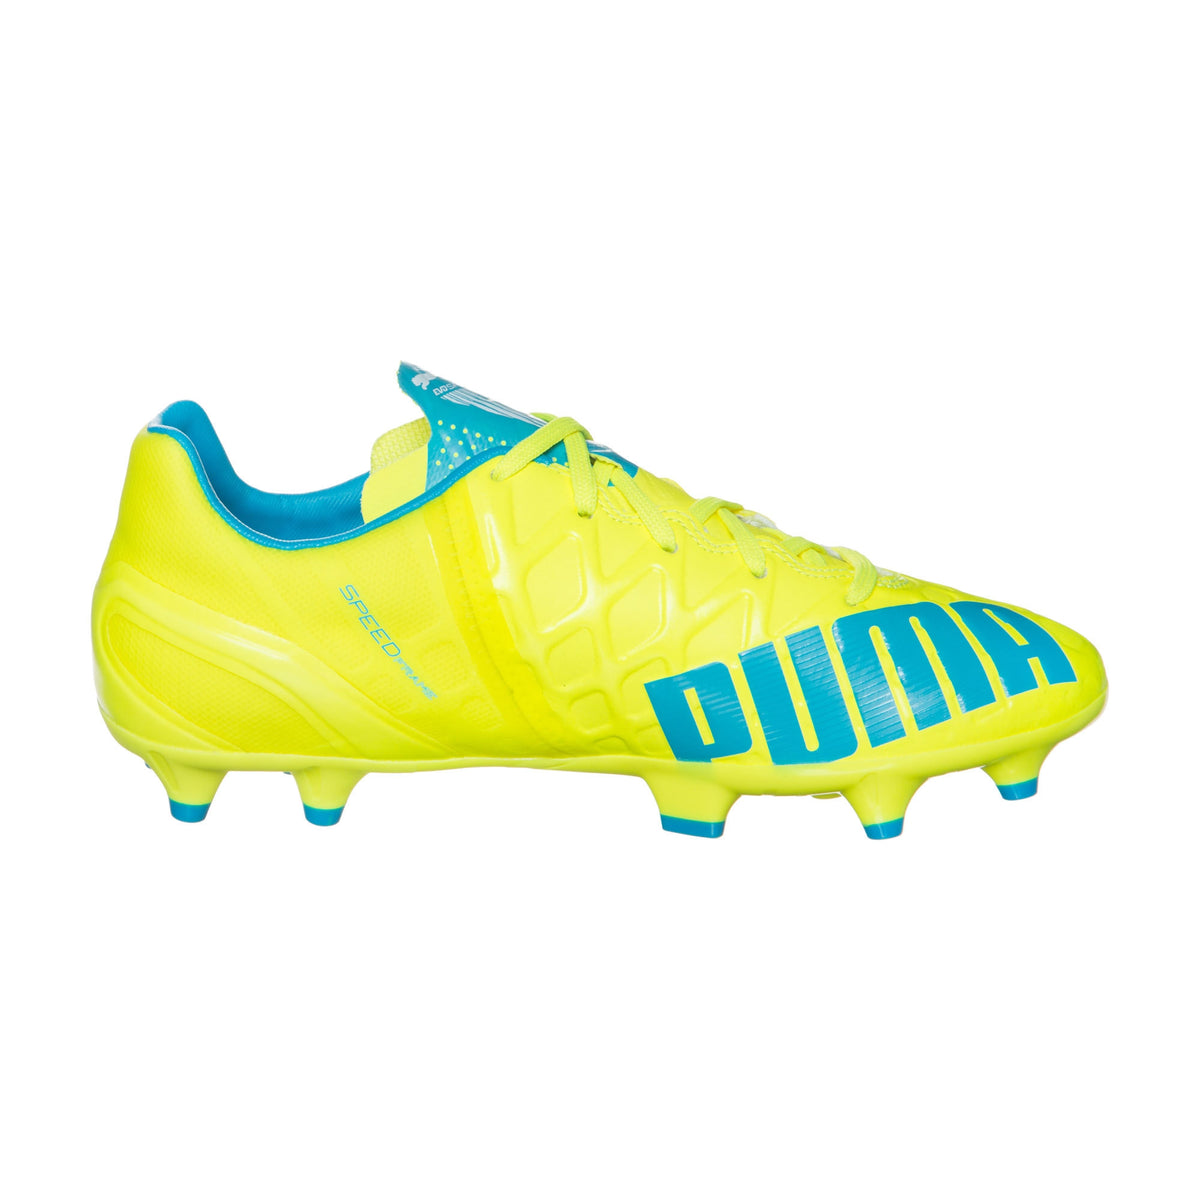 Puma evoSPEED 1.4 FG Junior chaussure de soccer enfant jaune bleu lv